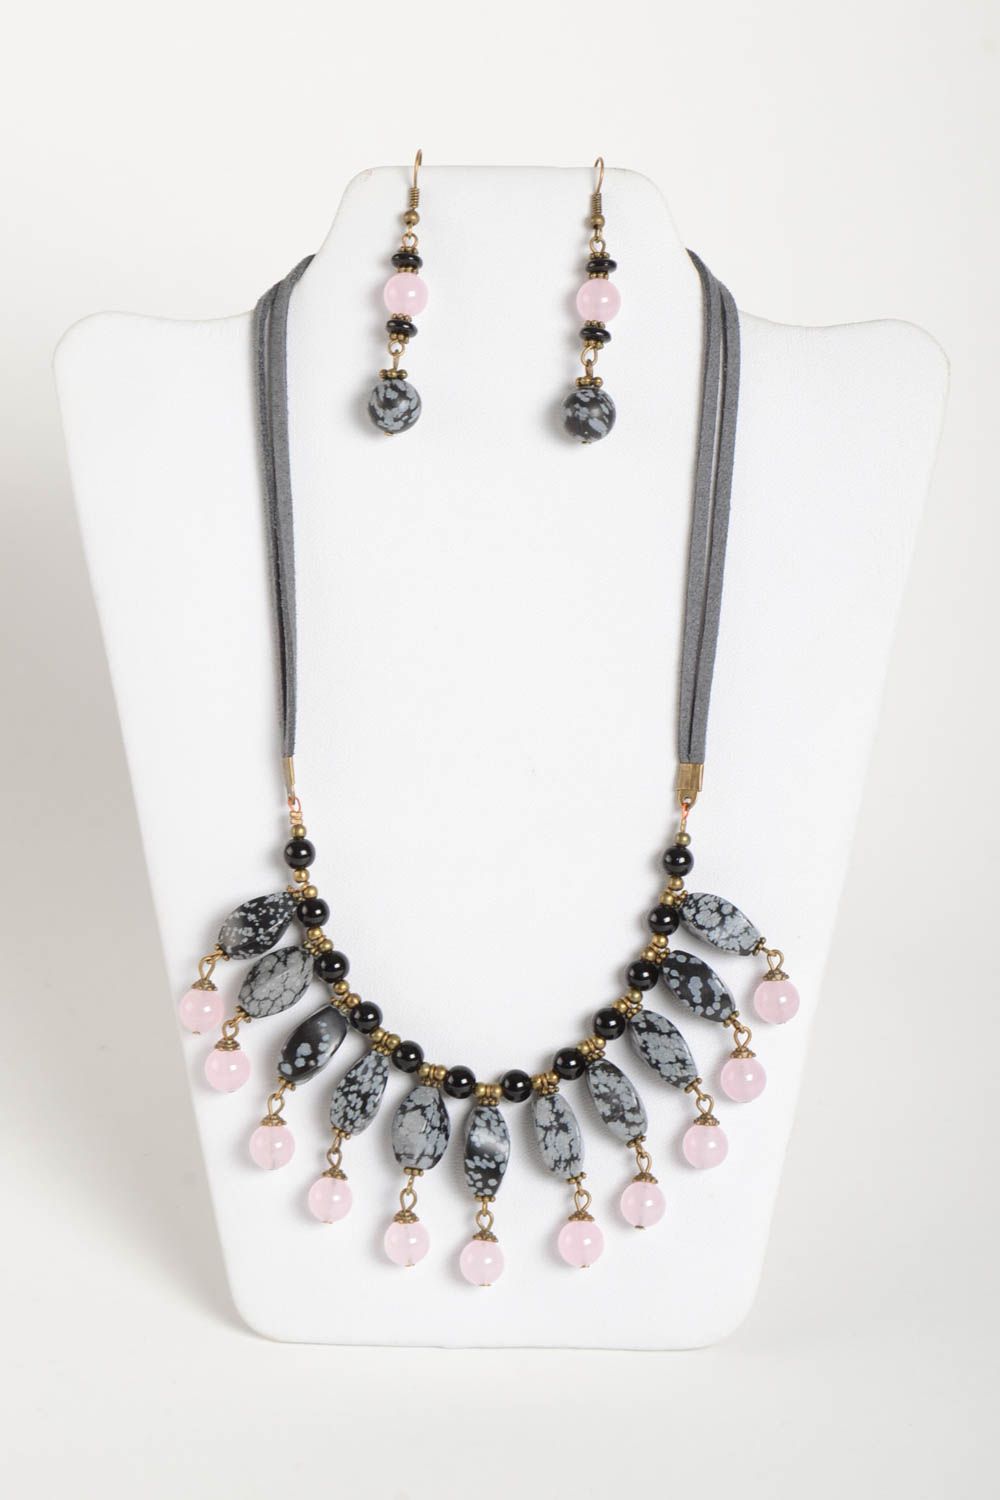 Handmade designer earrings stylish elegant necklace natural stone jewelry set photo 2